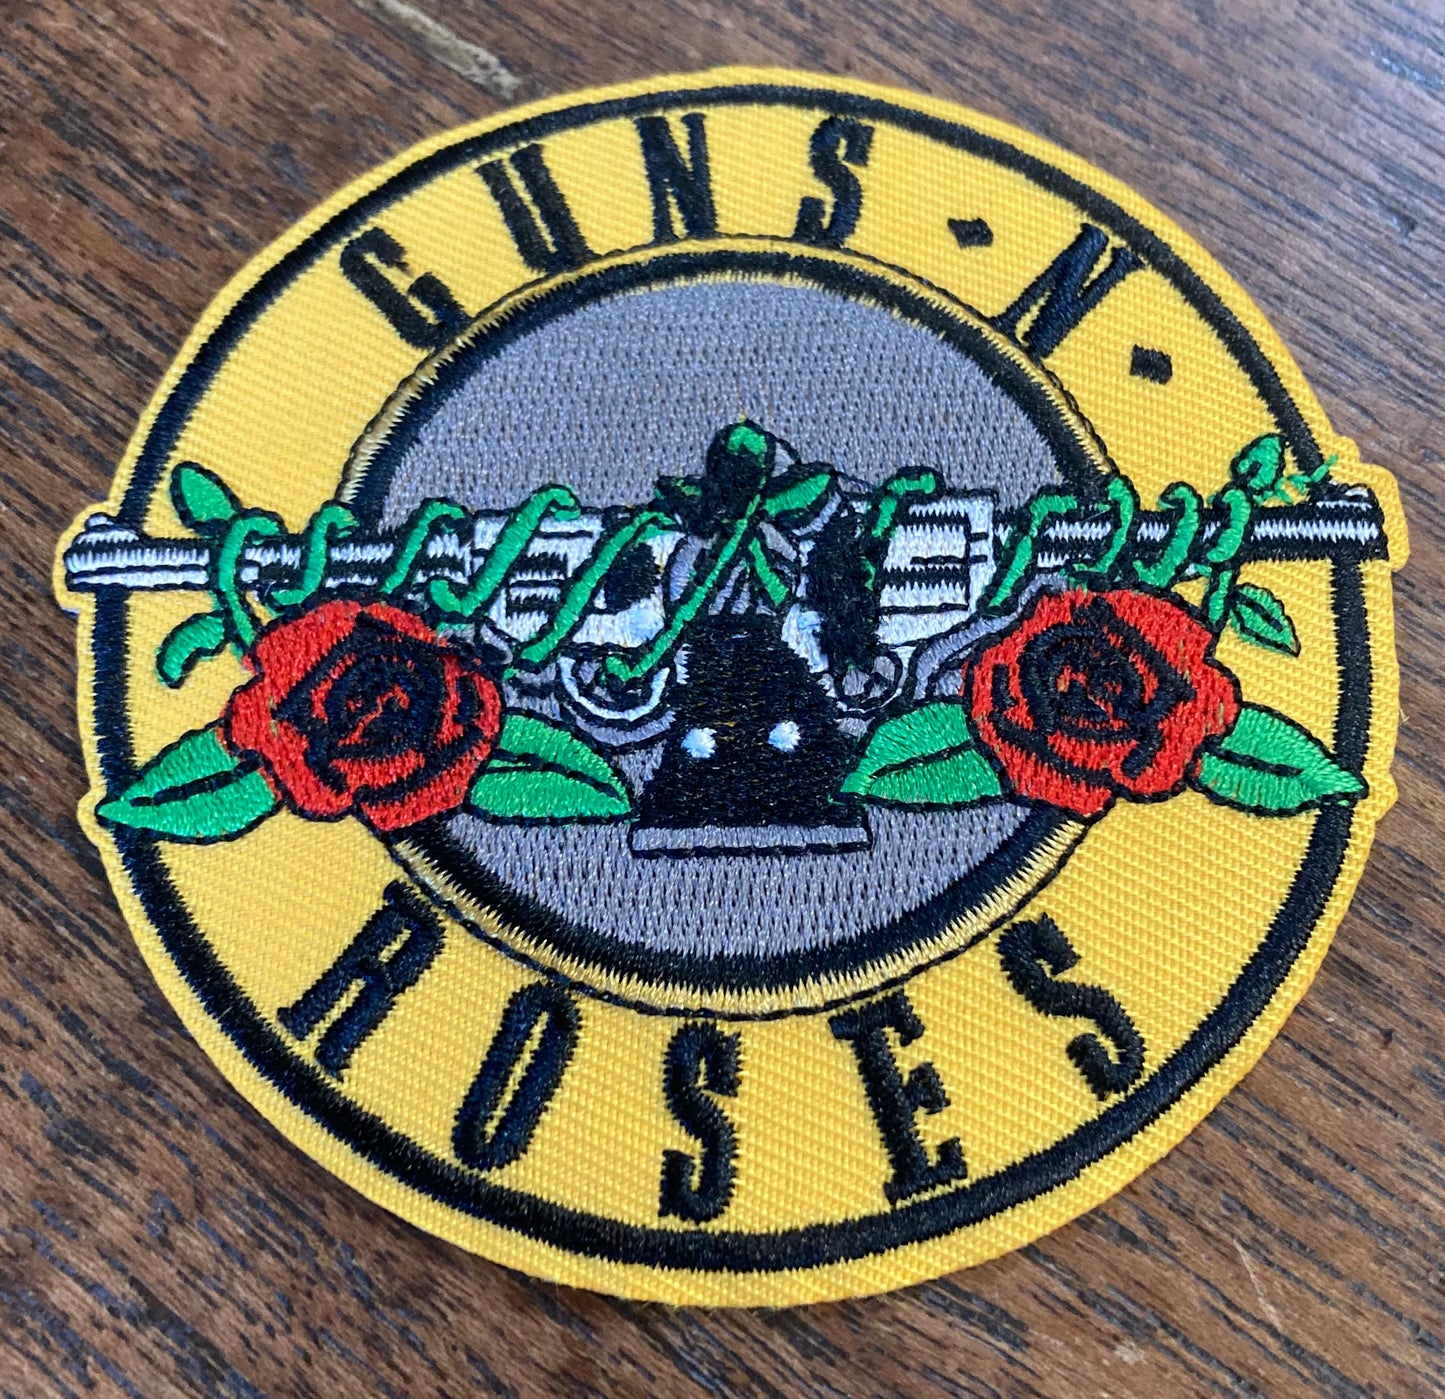  Guns 'n' Roses - Logo Circular Back Patch